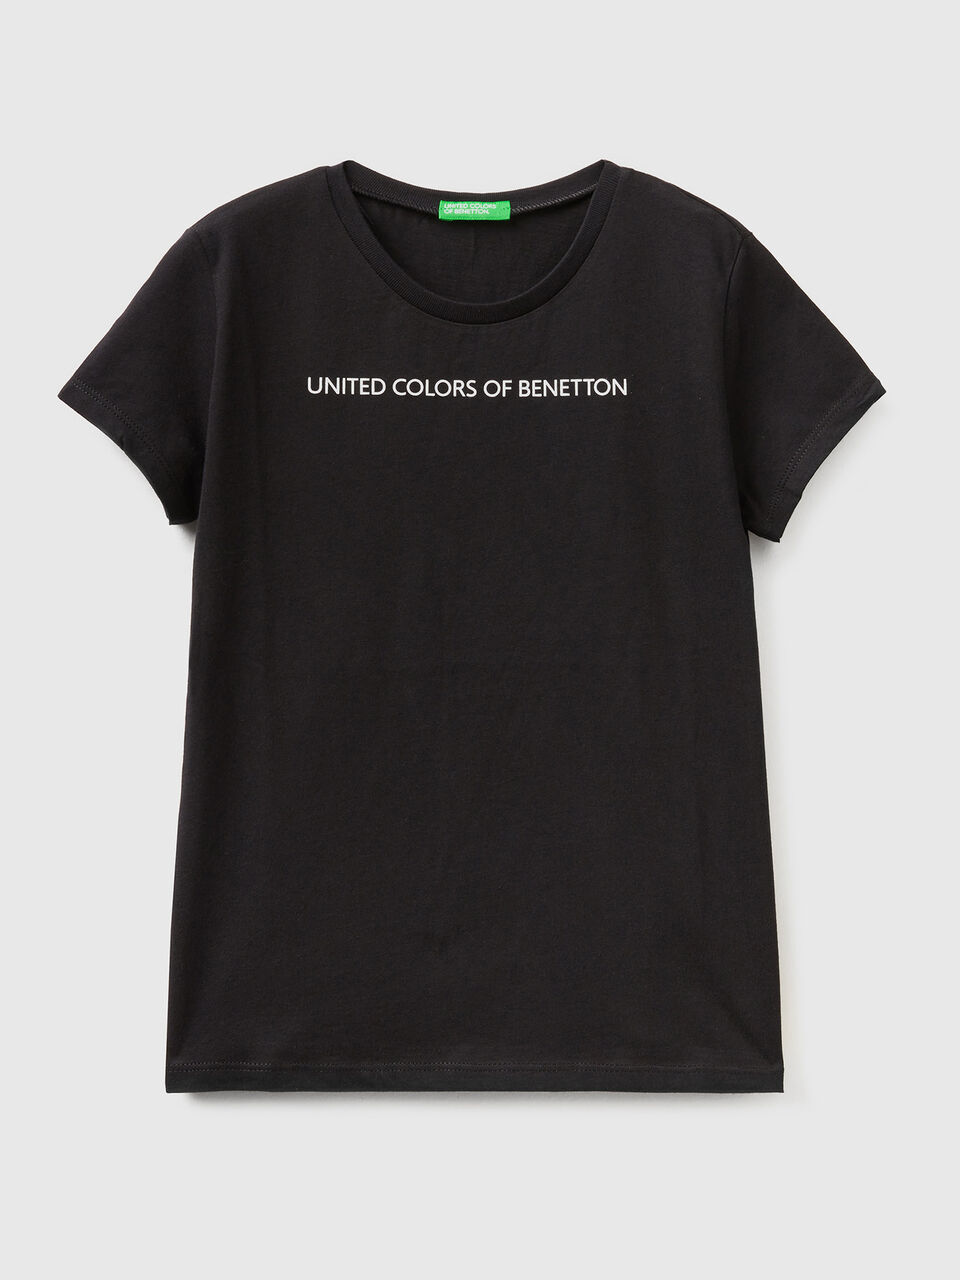 Schwarz Logo mit 100% aus | Benetton Shirt - Baumwolle